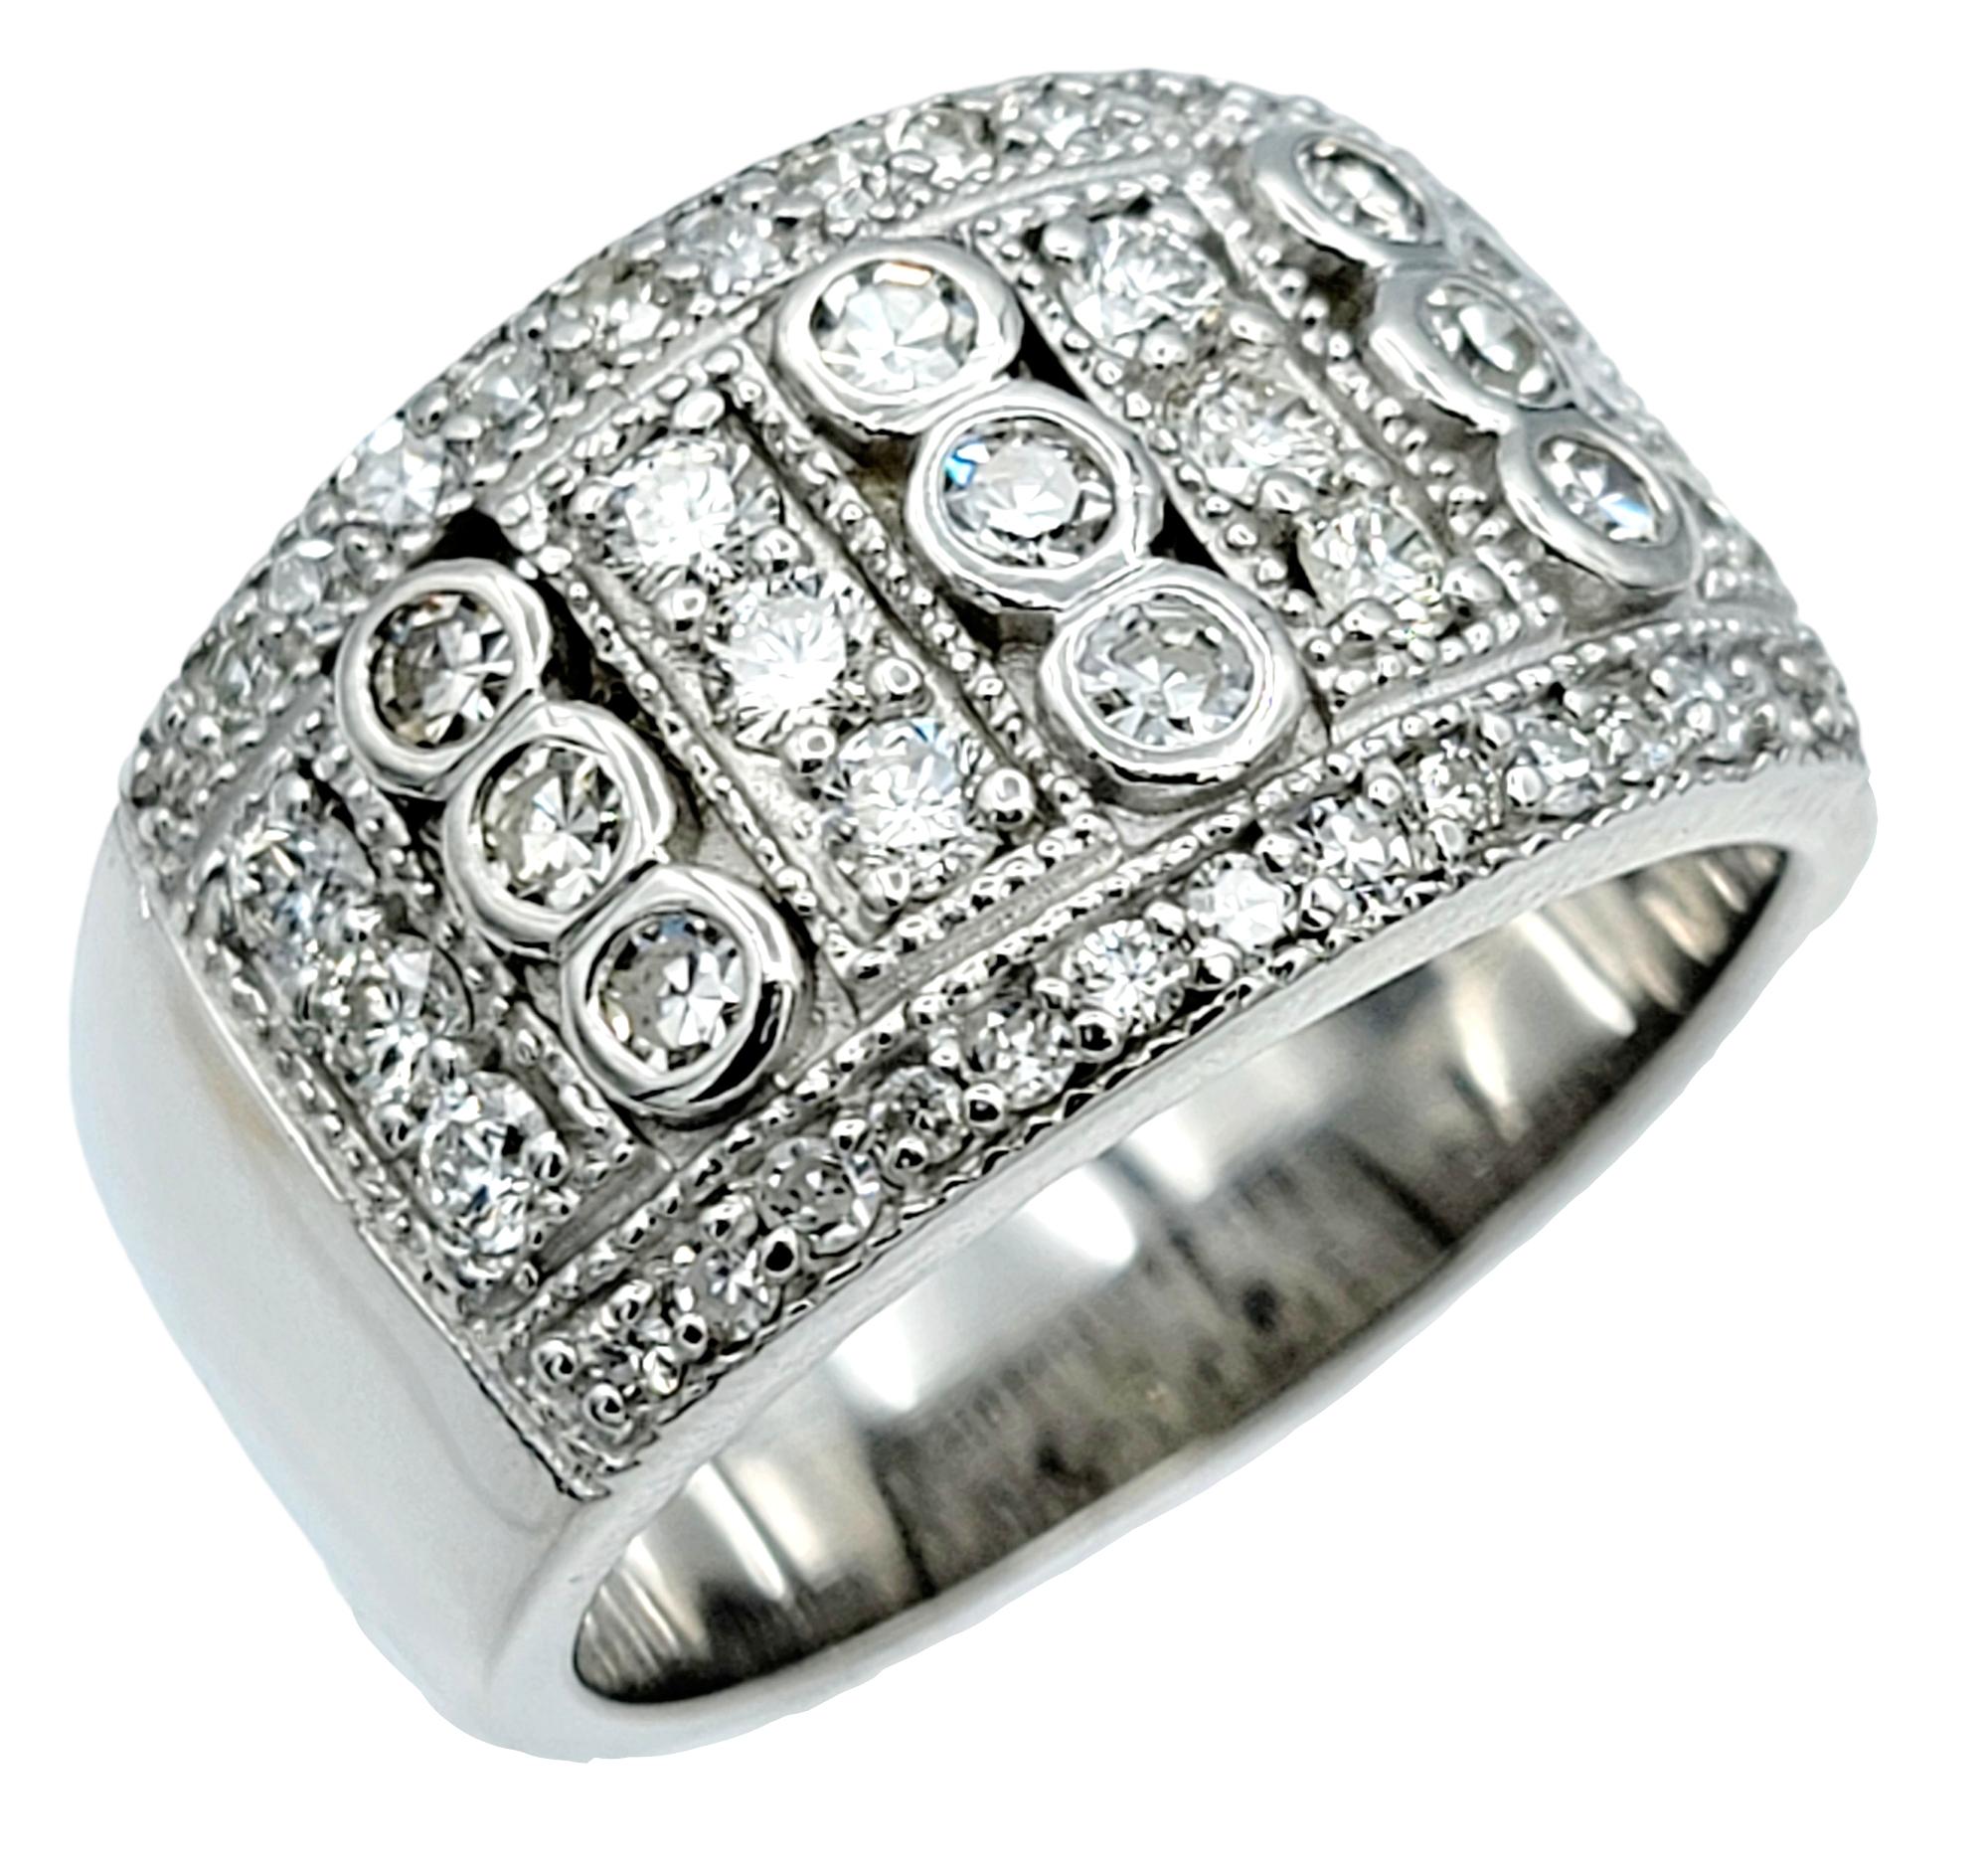 Ringgröße: 9.25

Wir präsentieren einen exquisiten mehrreihigen Diamantring, ein Meisterwerk zeitloser Eleganz und aufwändiger Handwerkskunst. Dieses atemberaubende Stück ist ein wahrer Beweis für die Kunstfertigkeit feiner Juwelen, entworfen, um zu